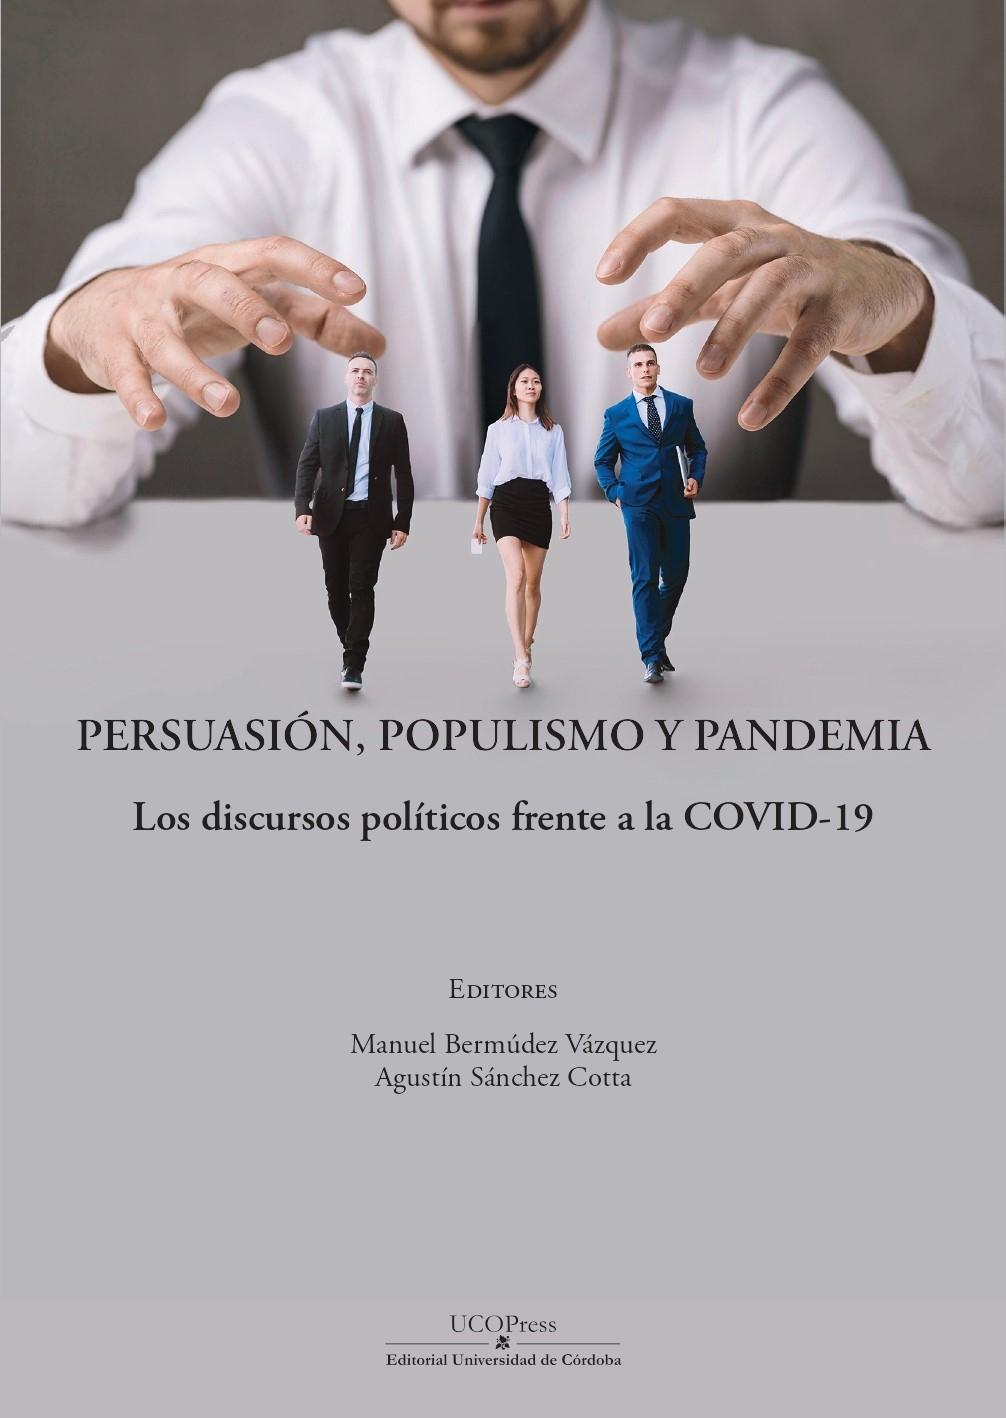 Persuasión, populismo y pandemia "Los discursos políticos frente a la COVID-19"